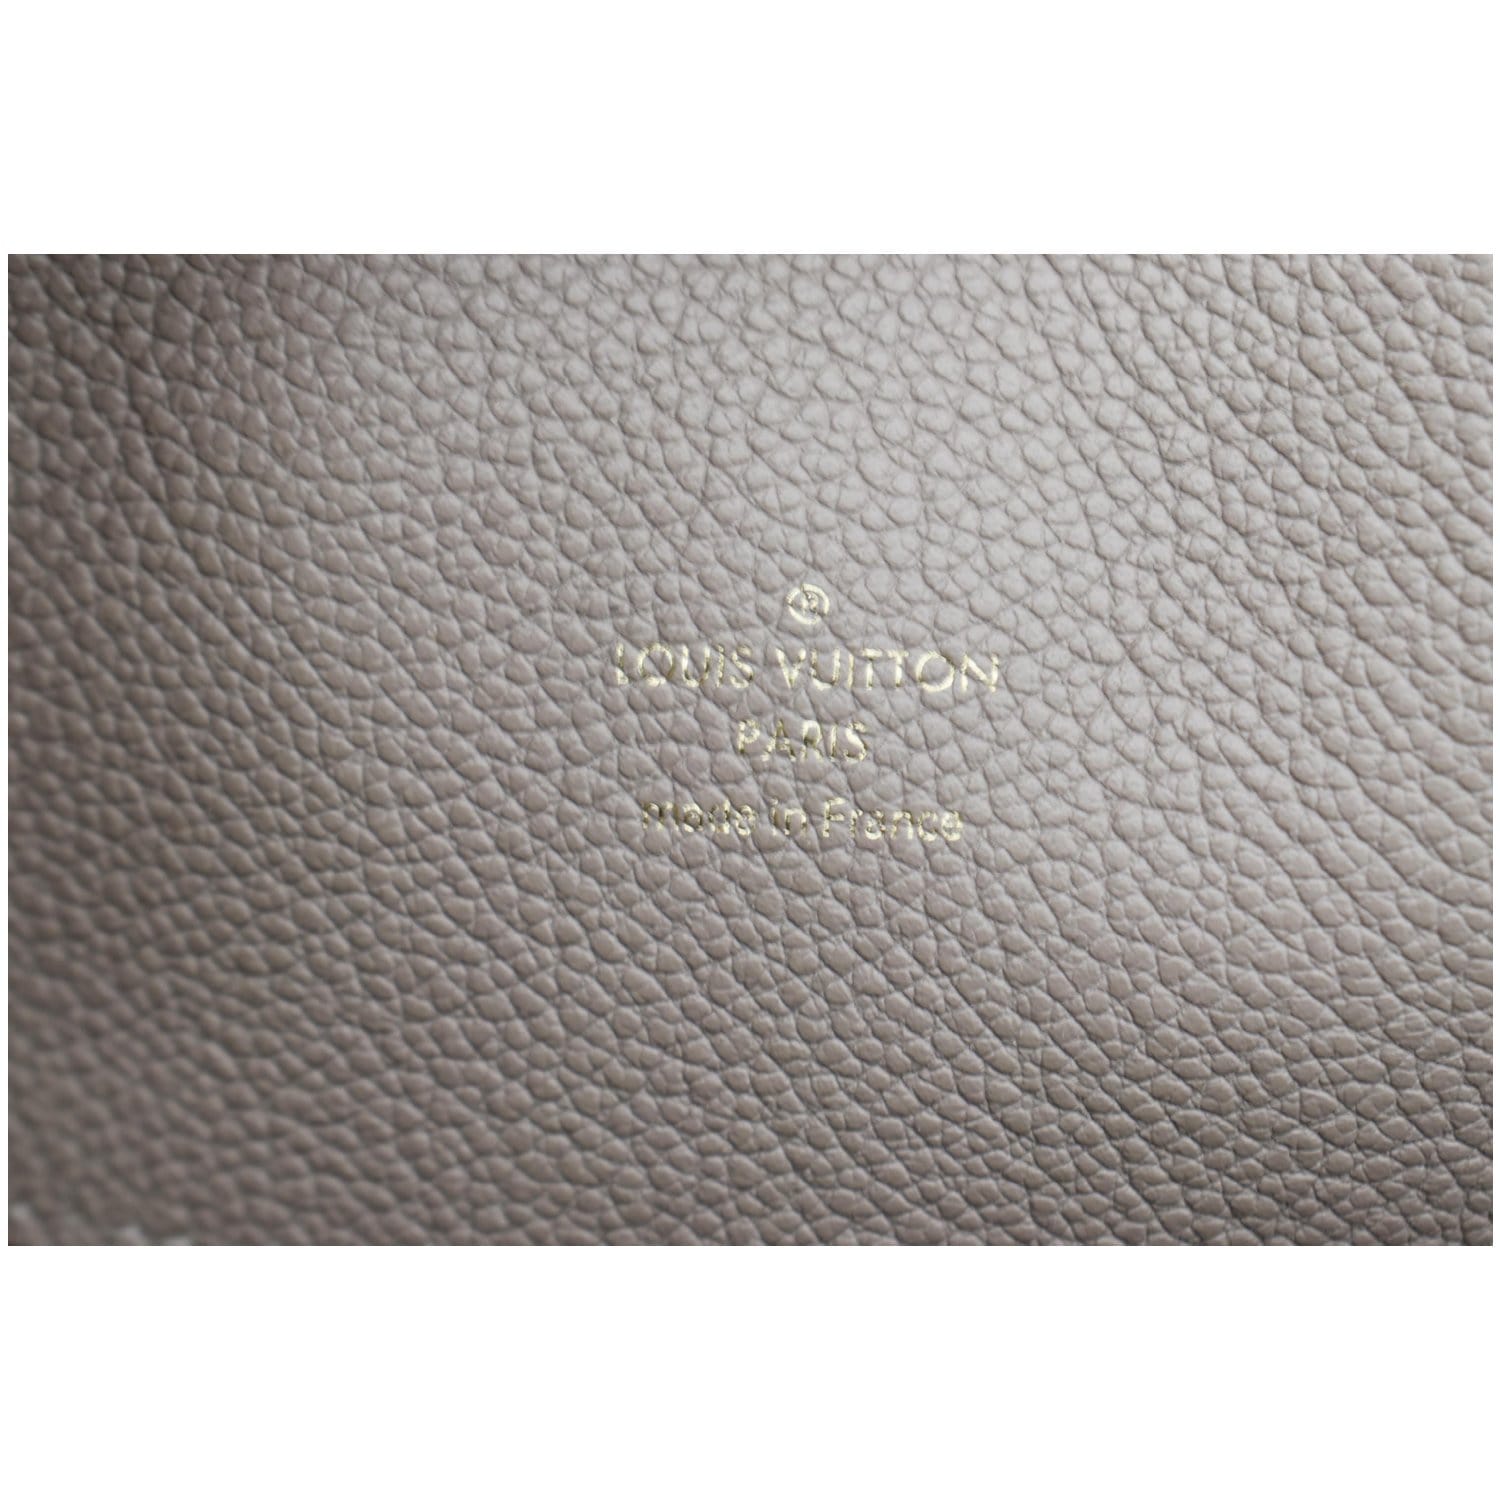 Louis Vuitton Black Glace Monogram Empreinte Leather Melie Bag